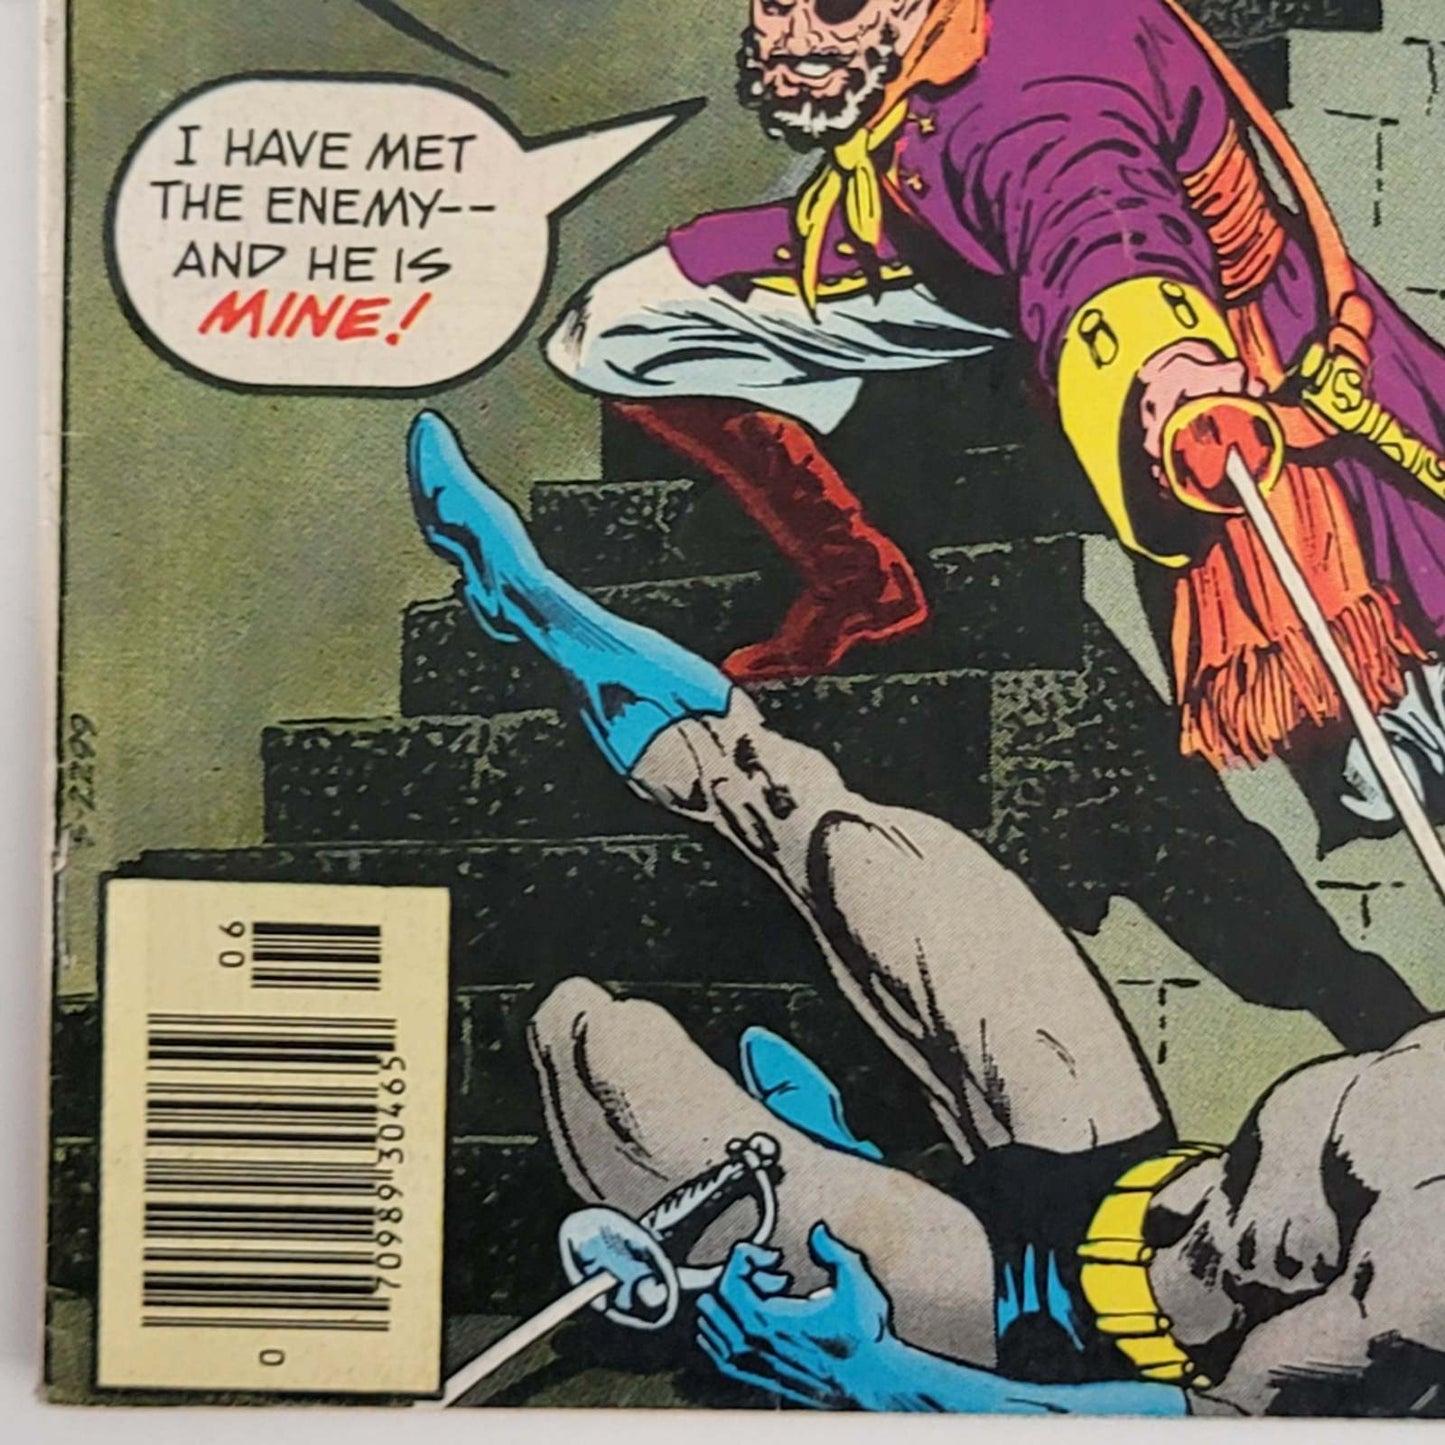 Detective Comics Vol 1 #0460 Item 3